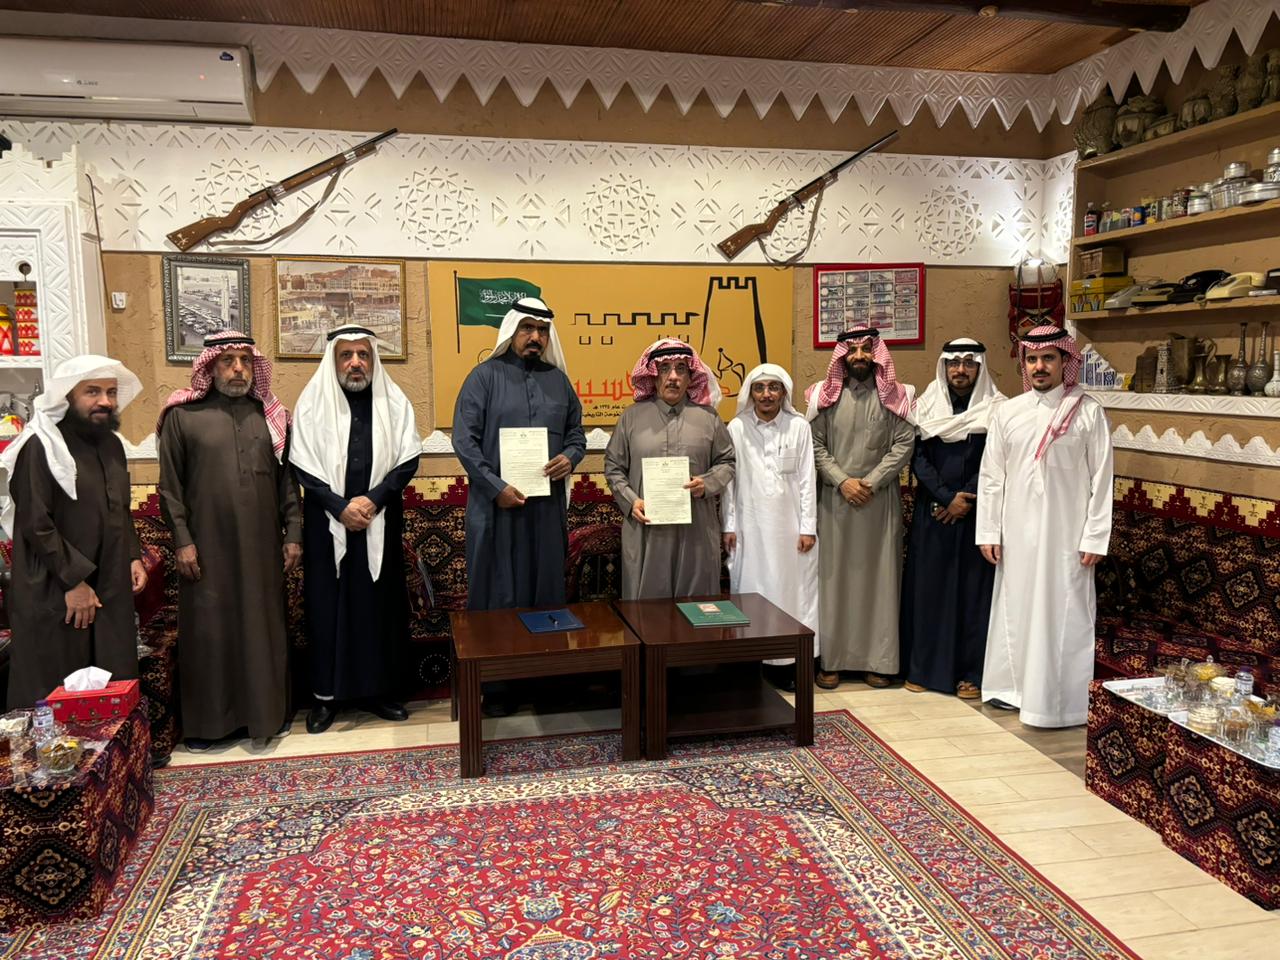 ديوانية الحسين التاريخية توقع اتفاقية شراكة لتبادل الخبرات وإقامة المبادرات الثقافية والعلمية مع مجلس وادي القرى الثقافي بالعلا